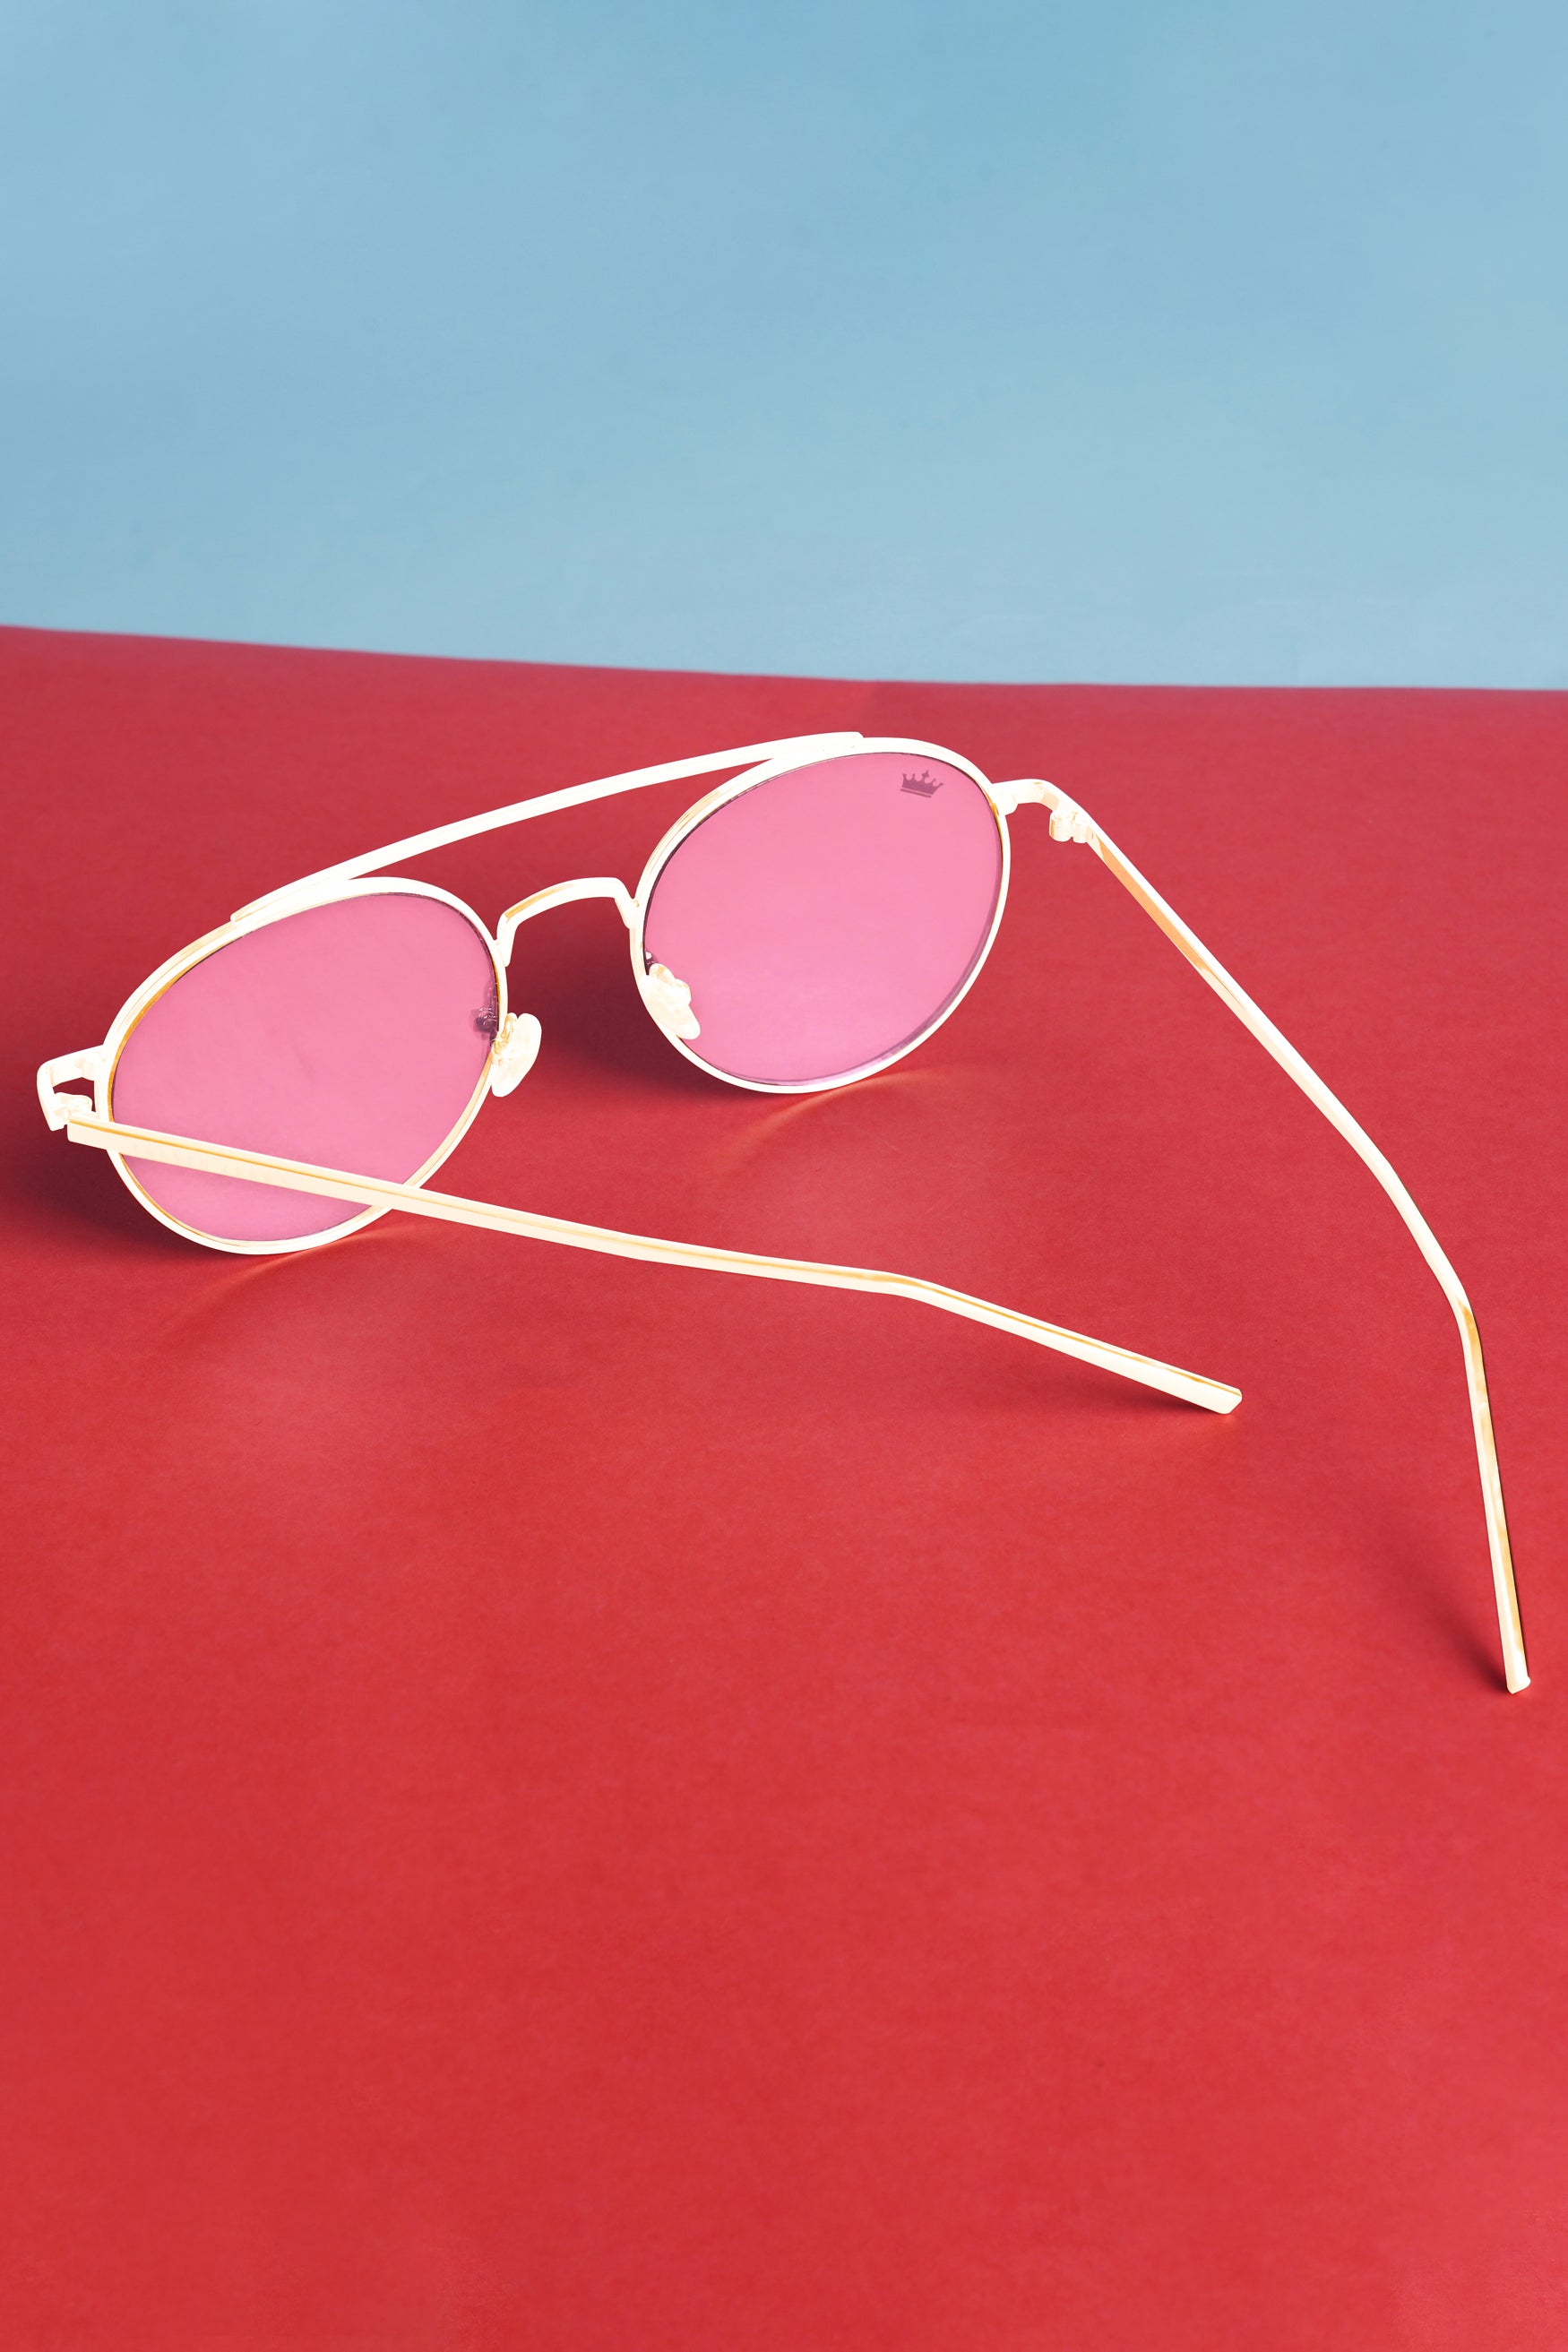 Buy Roadies Pink Aviator Unisex Sunglasses at Best Price @ Tata CLiQ